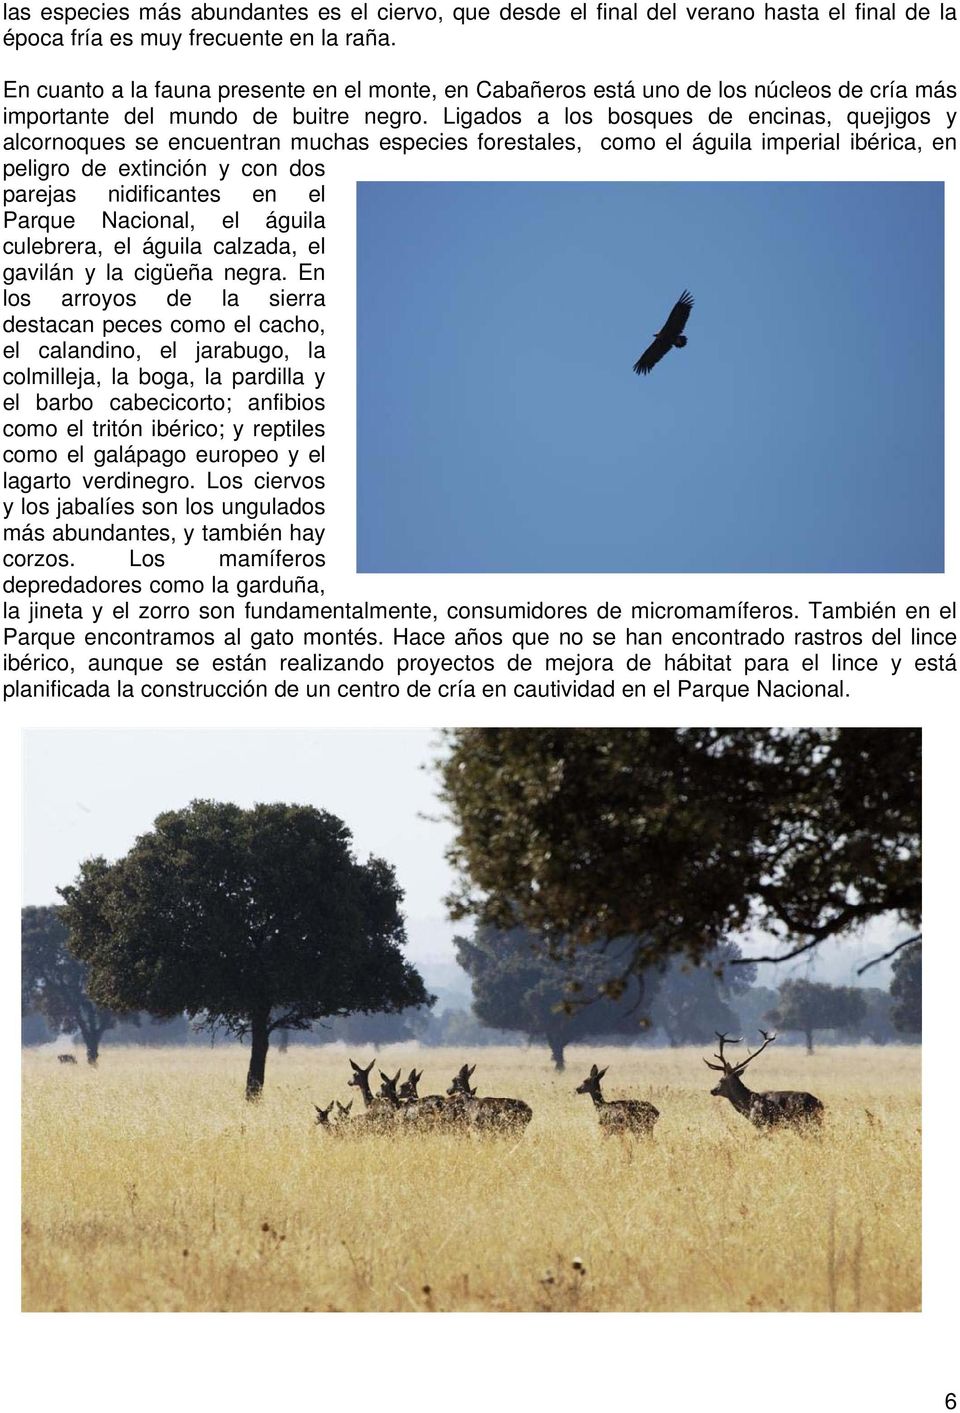 Ligados a los bosques de encinas, quejigos y alcornoques se encuentran muchas especies forestales, como el águila imperial ibérica, en peligro de extinción y con dos parejas nidificantes en el Parque